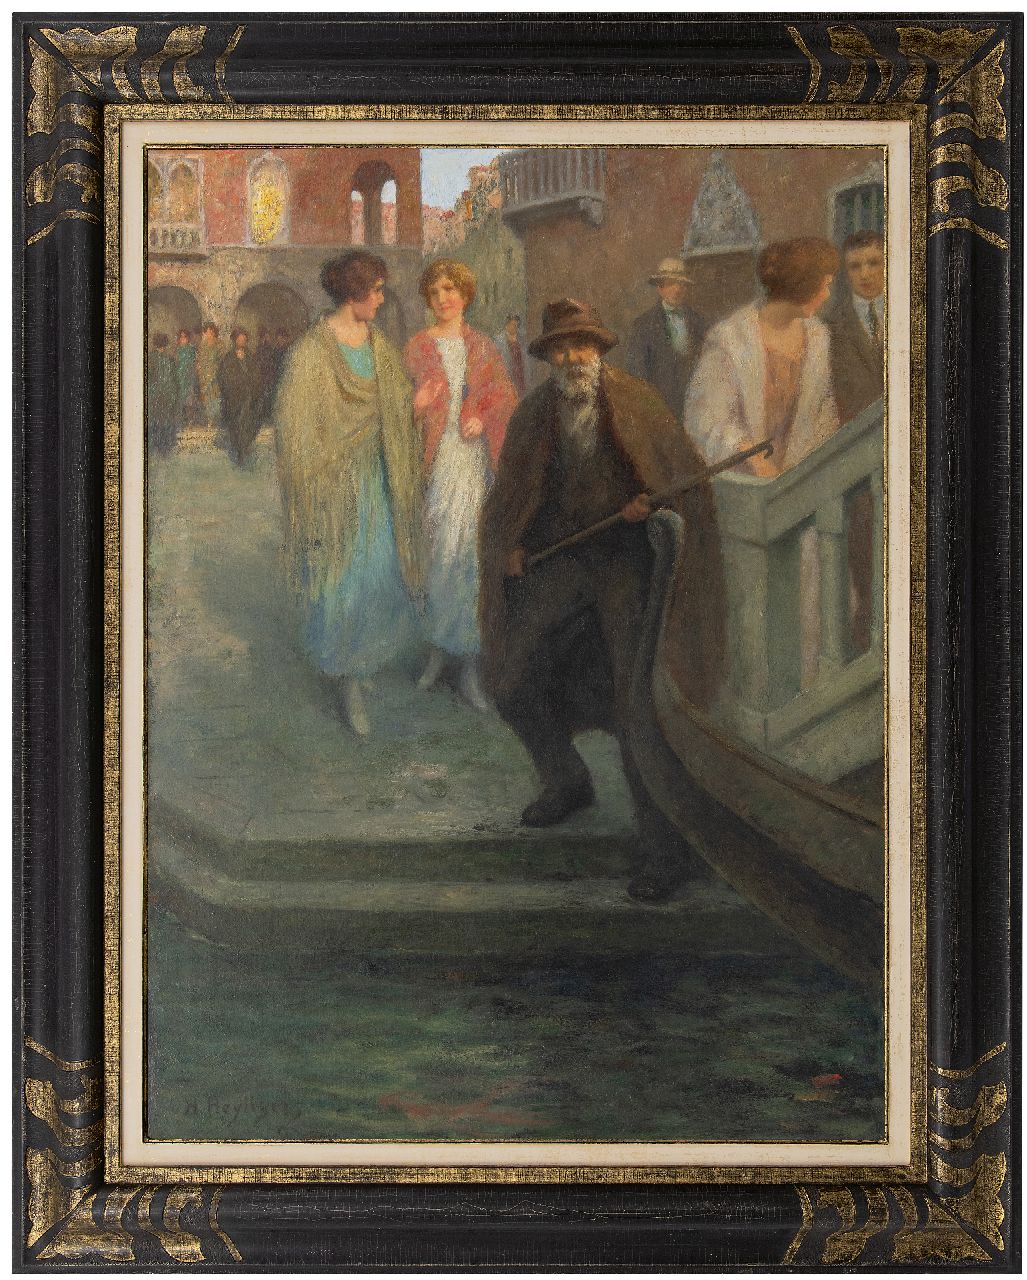 Heijligers H.  | Hendrik 'Henri' Heijligers | Schilderijen te koop aangeboden | Elegante jonge dames in Venetië, olieverf op doek 100,3 x 75,4 cm, gesigneerd linksonder